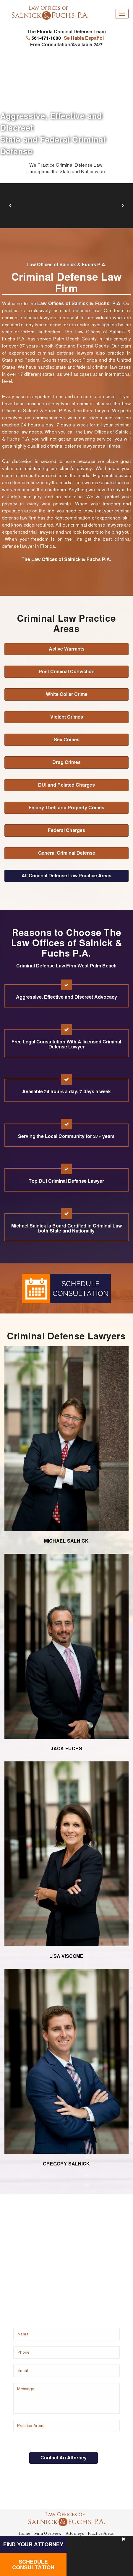 Law Office of Salnick, Fuchs & Bertisch, P.A. - West Palm Beach FL Lawyers